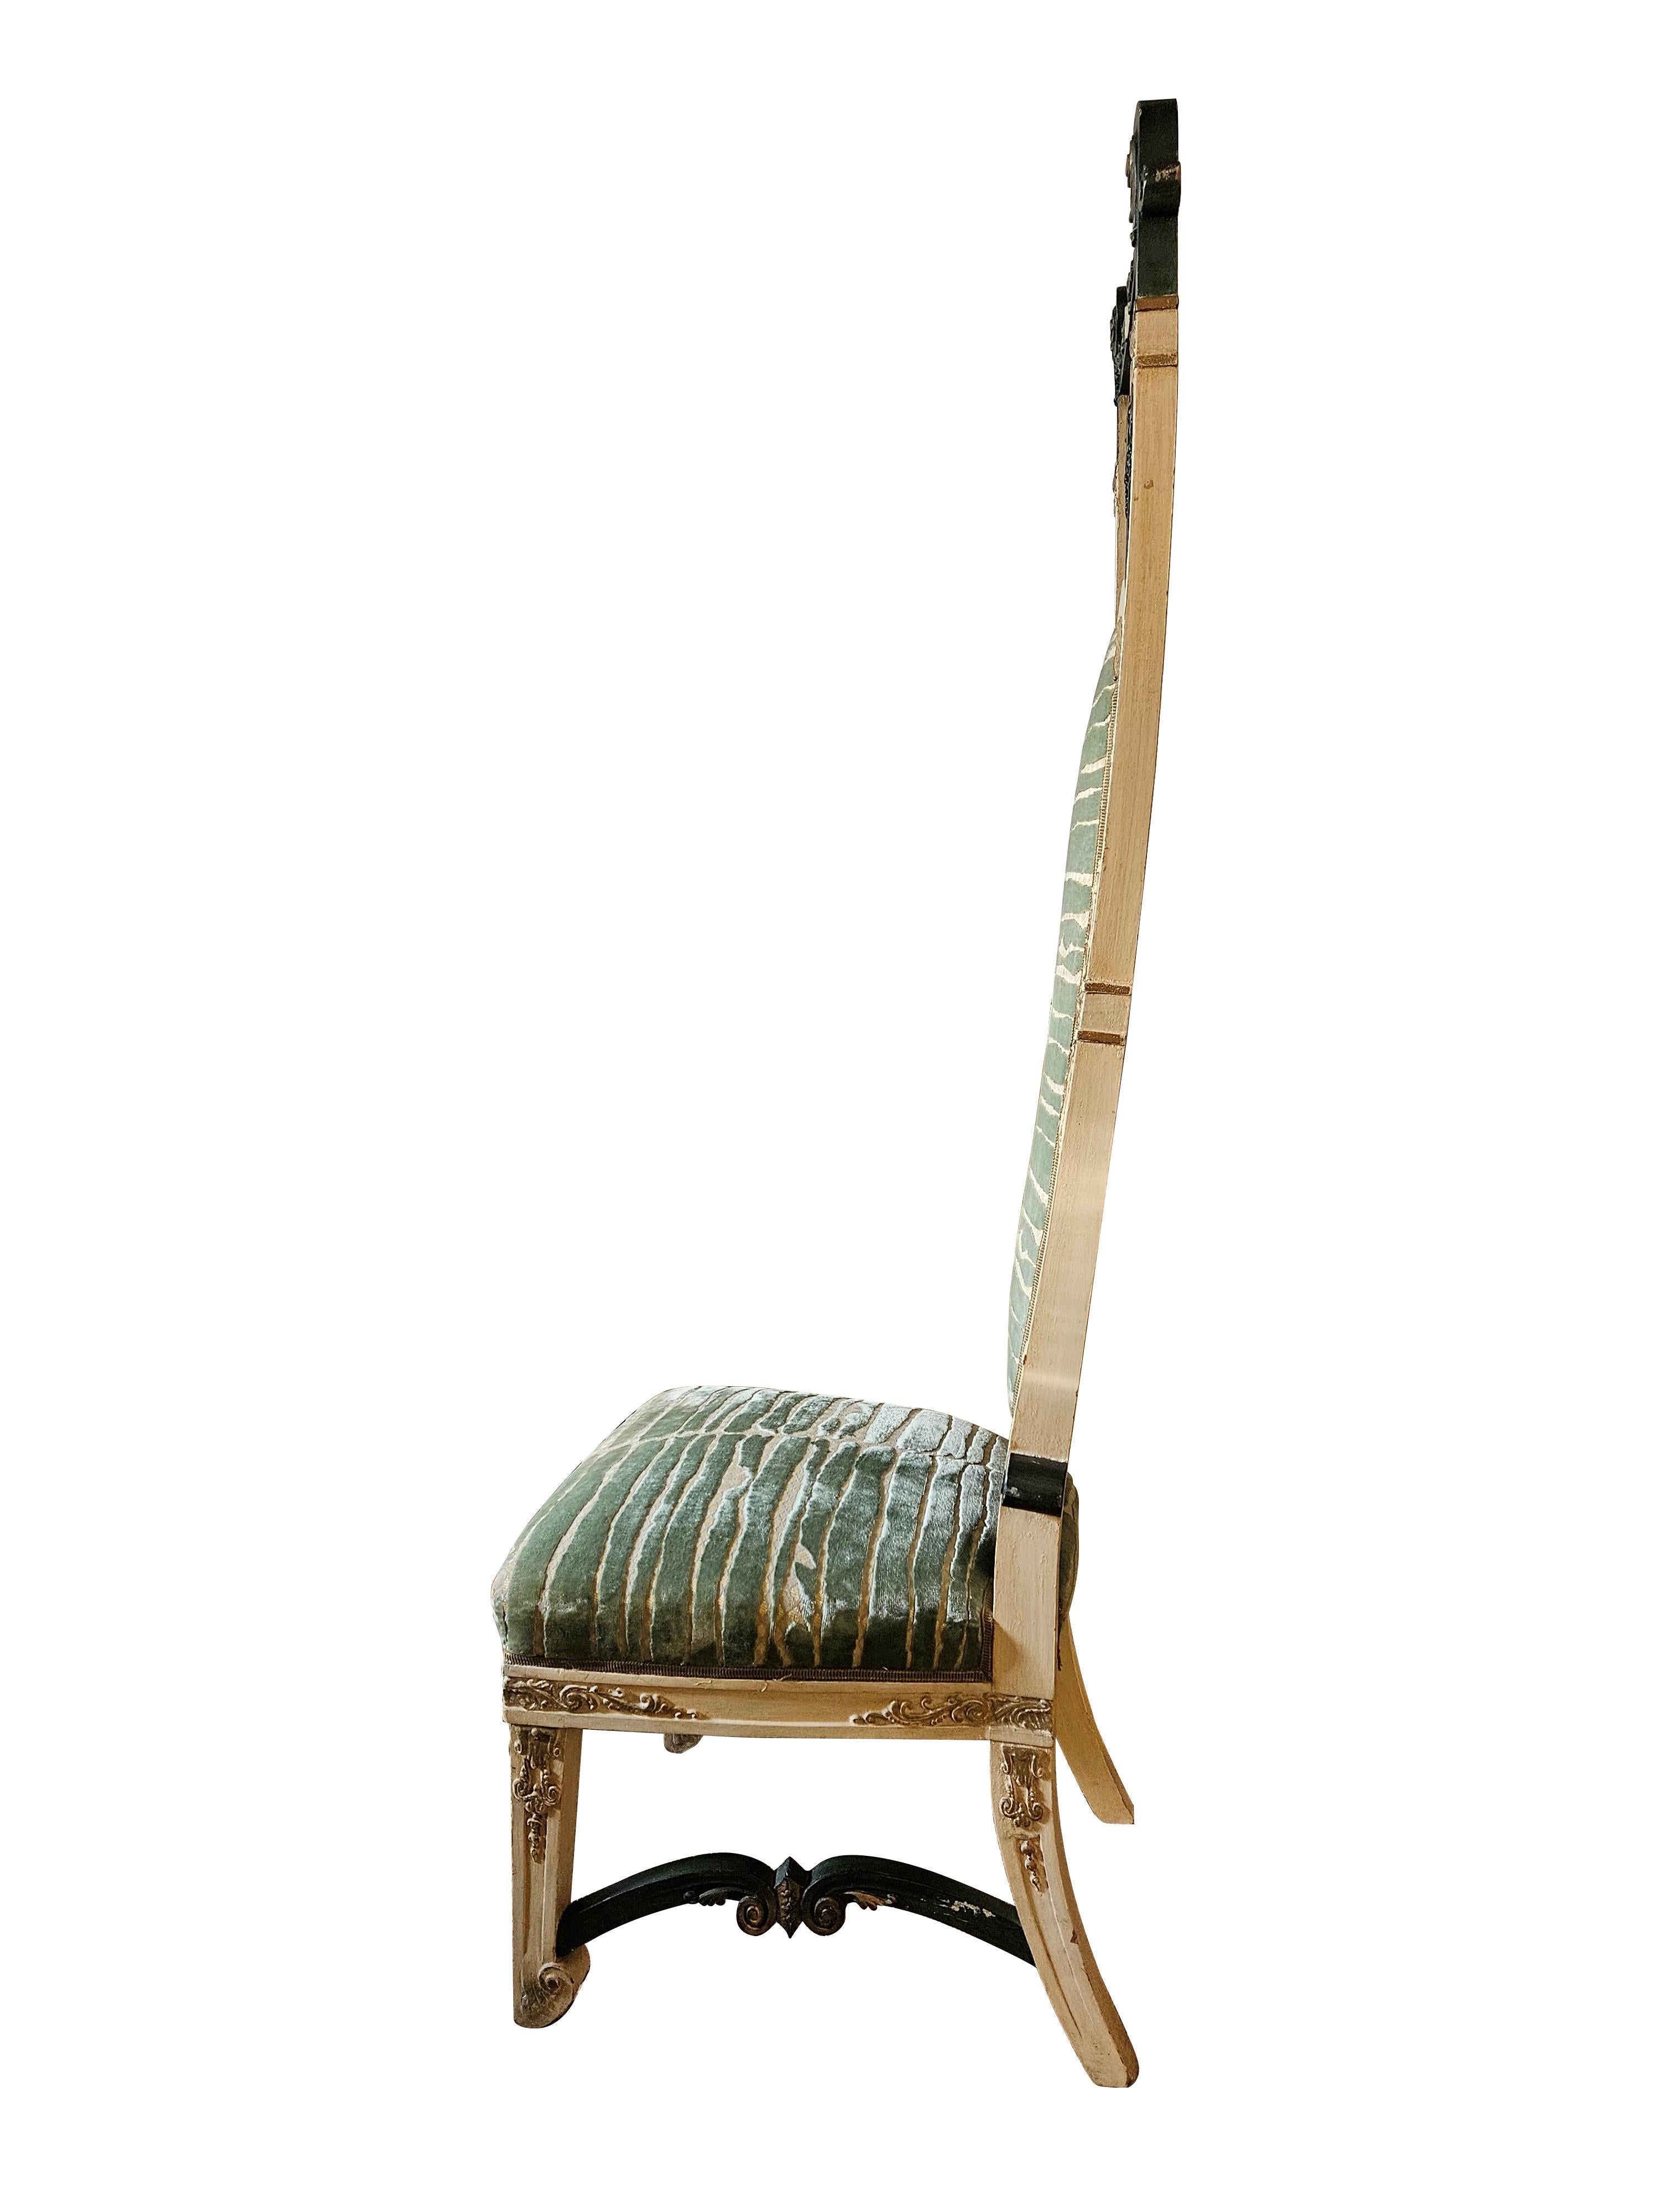 Magnifiques chaises basses de style éclectique en bois laqué, doré et sculpté de spirales, d'ombilics et de feuilles stylisées, avec un haut dossier ajouré formé de trois barreaux. Tapissé de velours de soie vert et or.